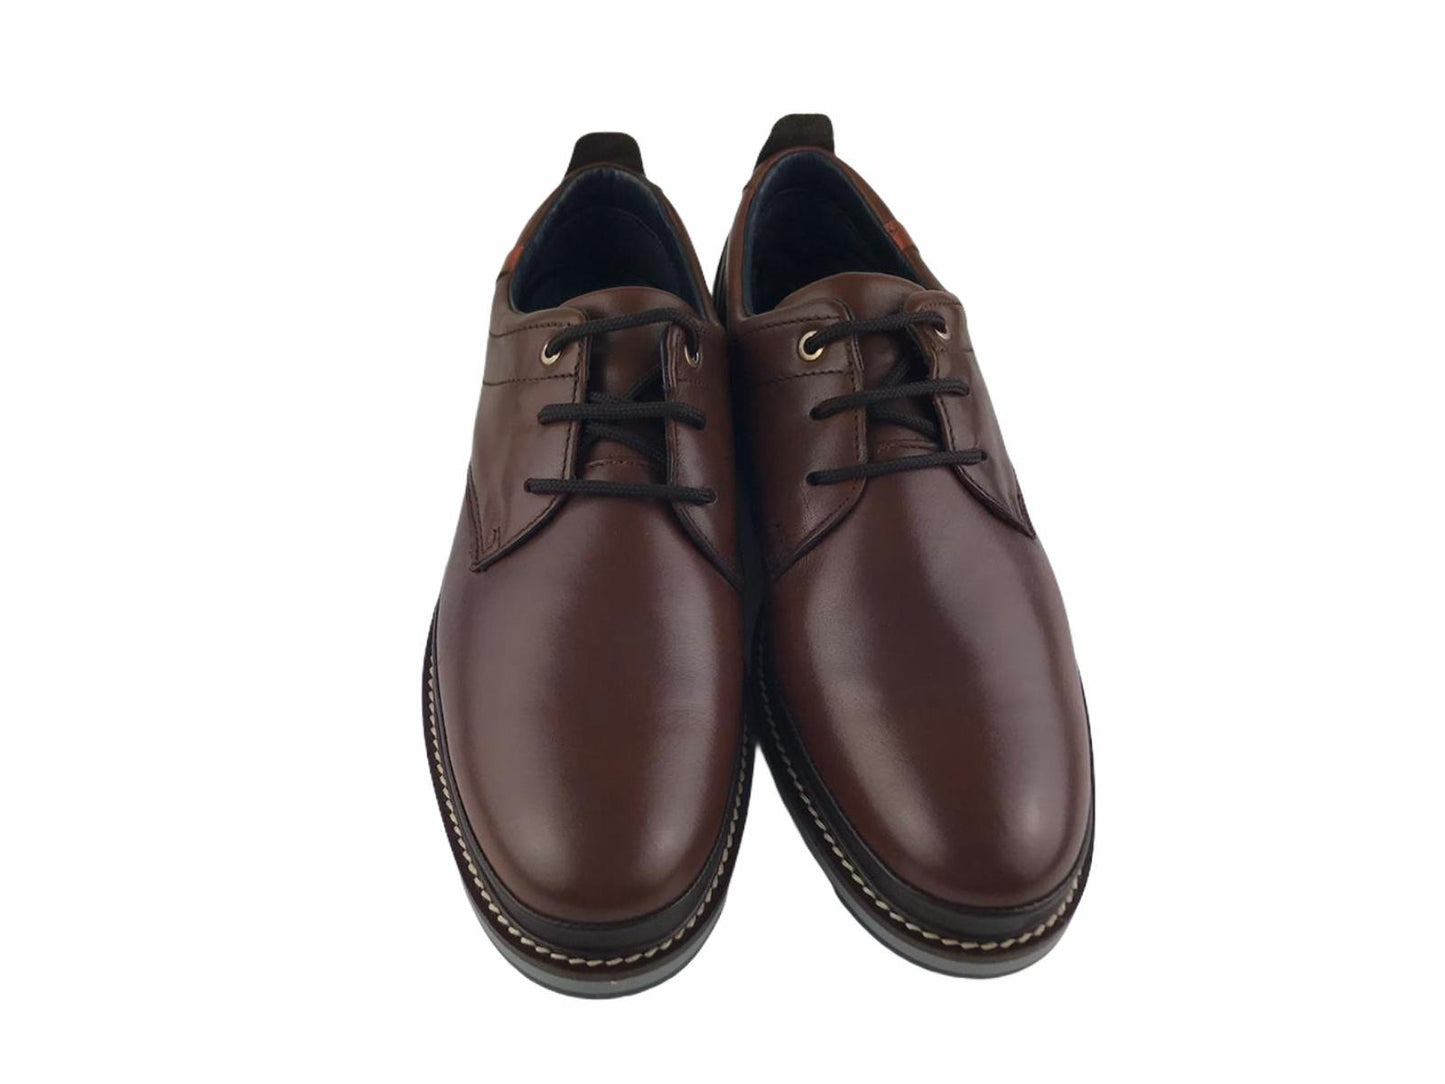 Zen | Zapato hombre cordón Turia 978 marrón